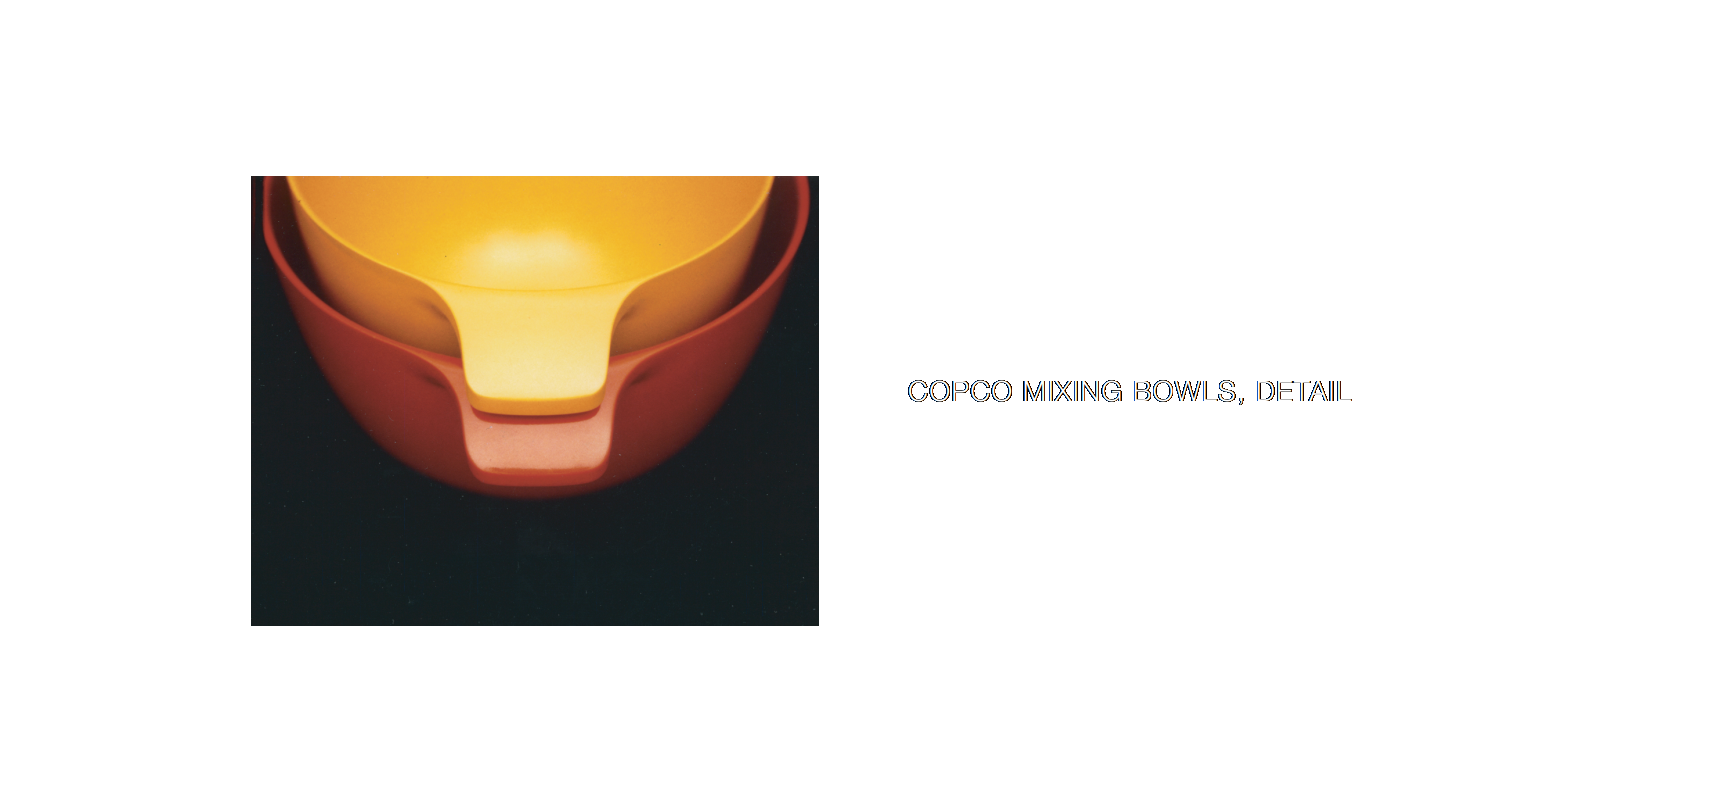 Copco Mixing Bowls, detail